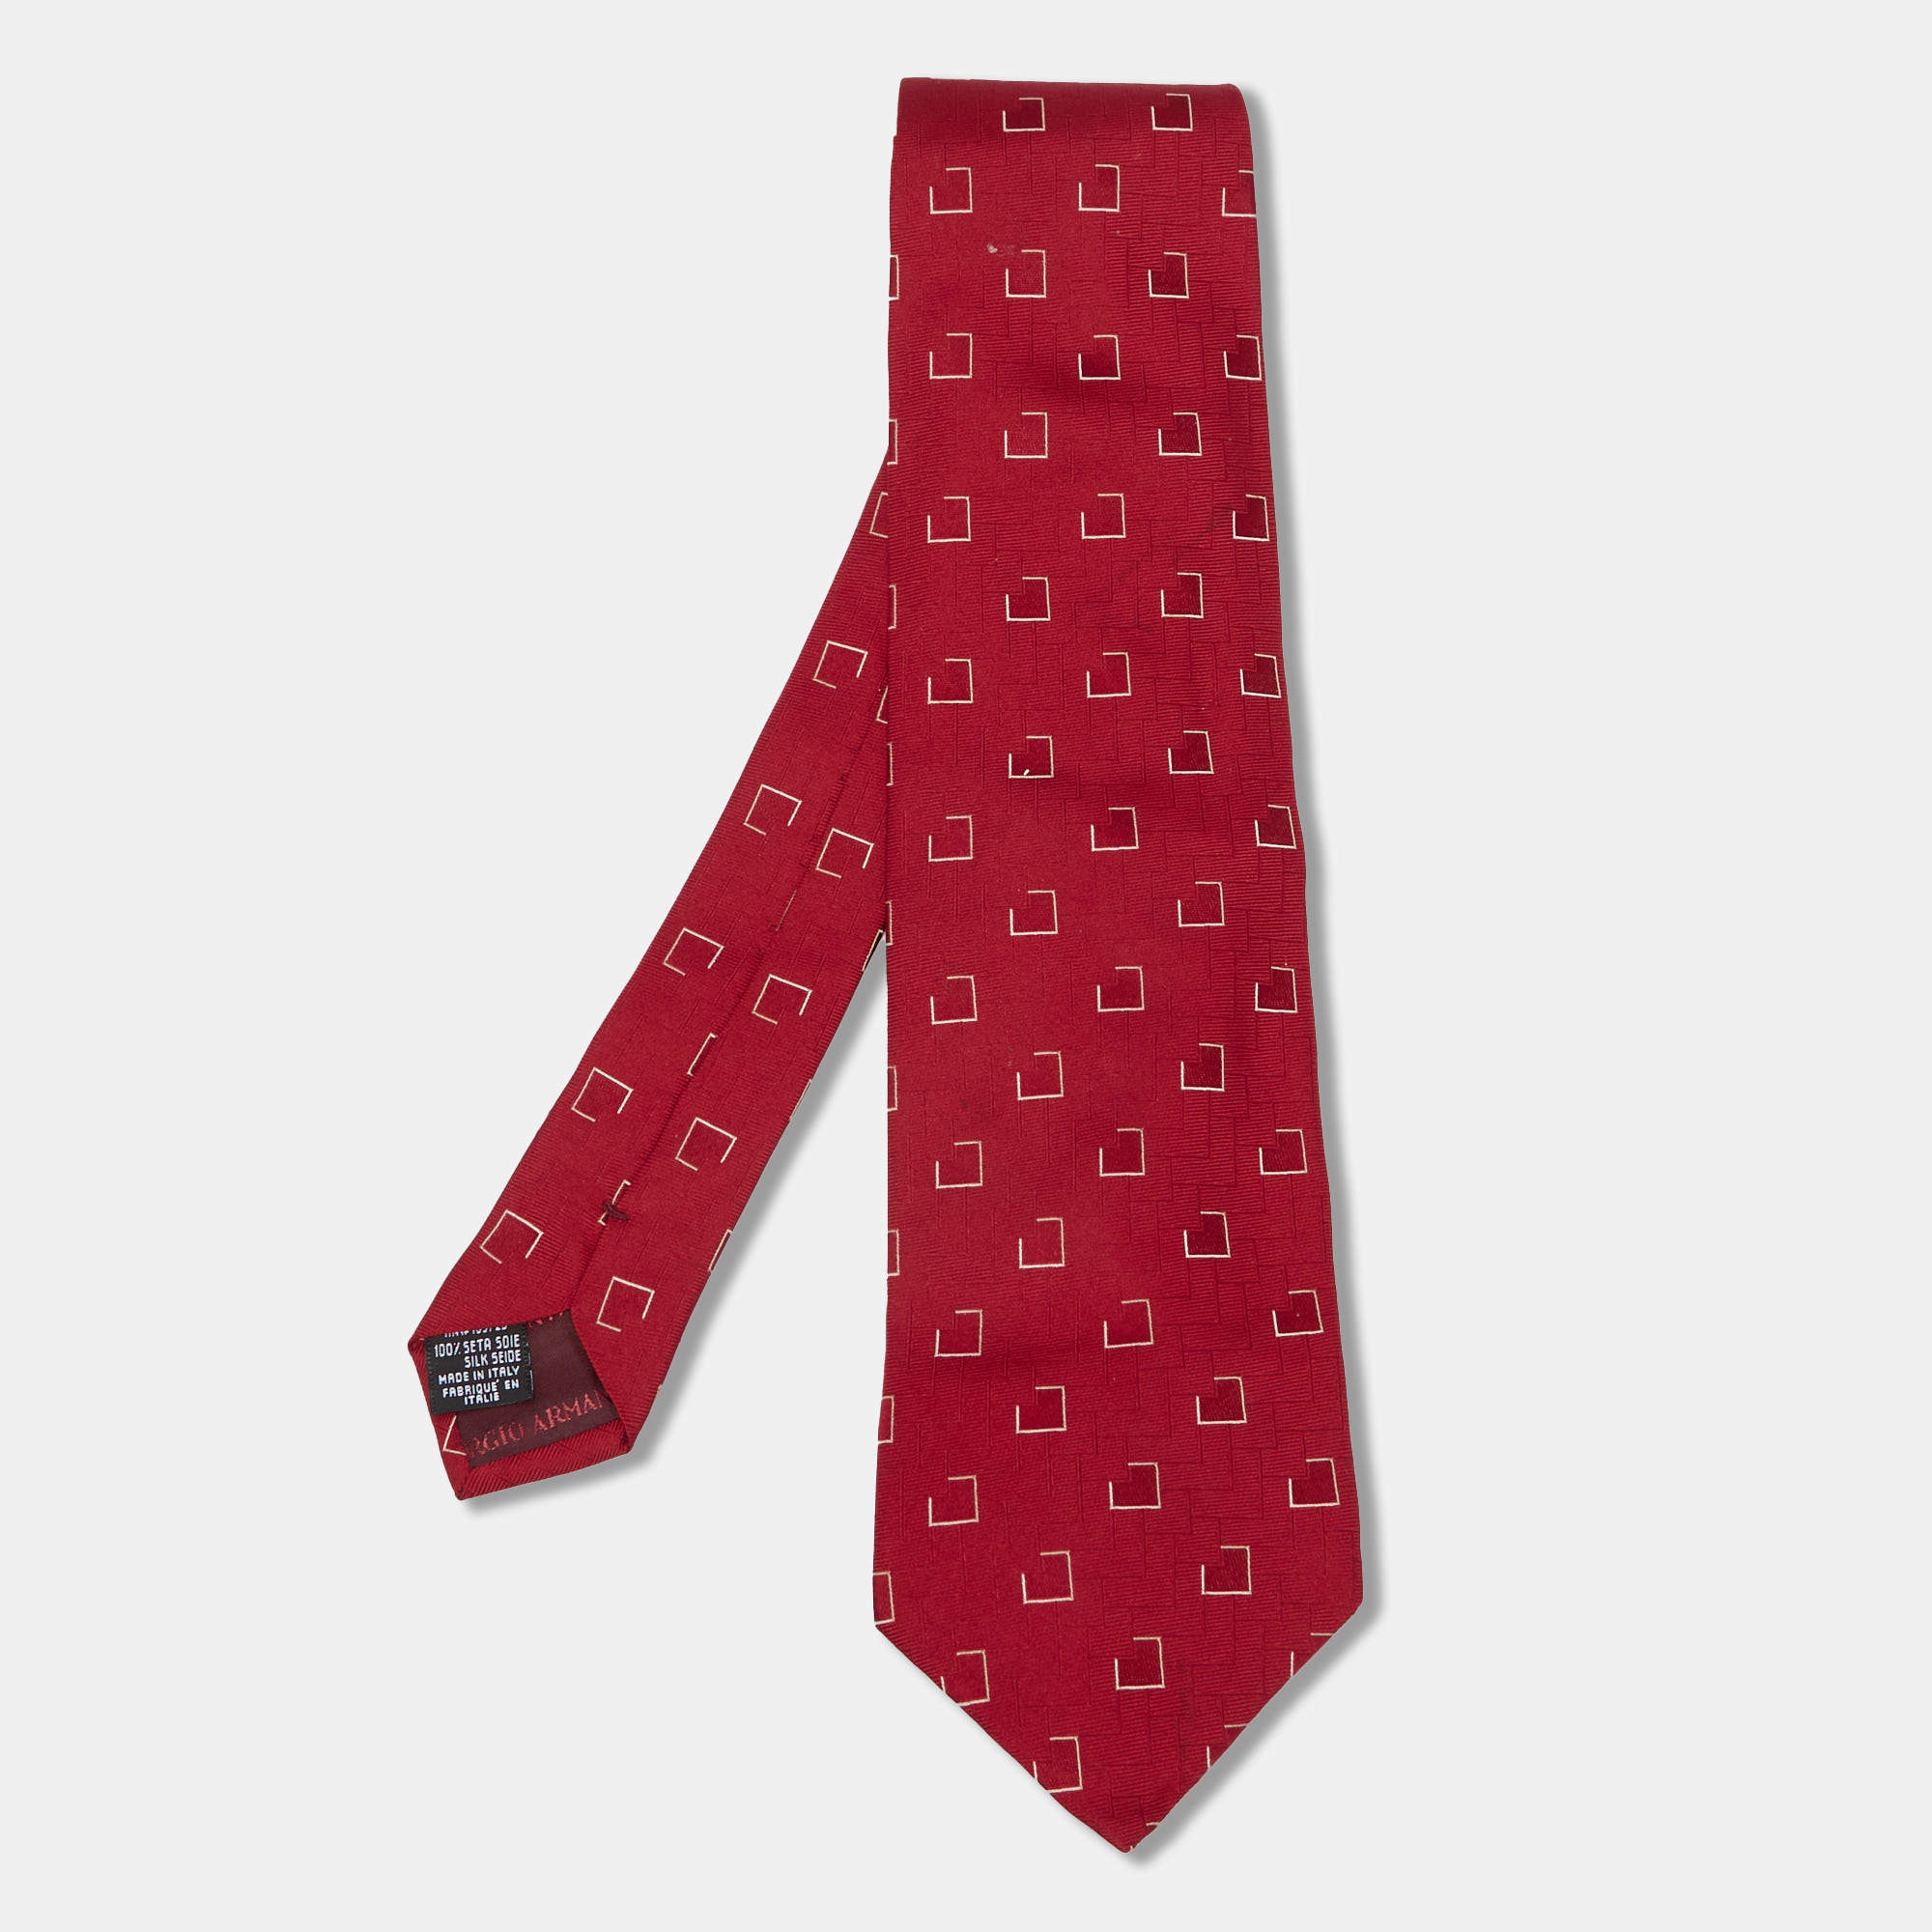 ربطة عنق جورجيو أرماني تراديشينال حرير جاكار �حمراء 